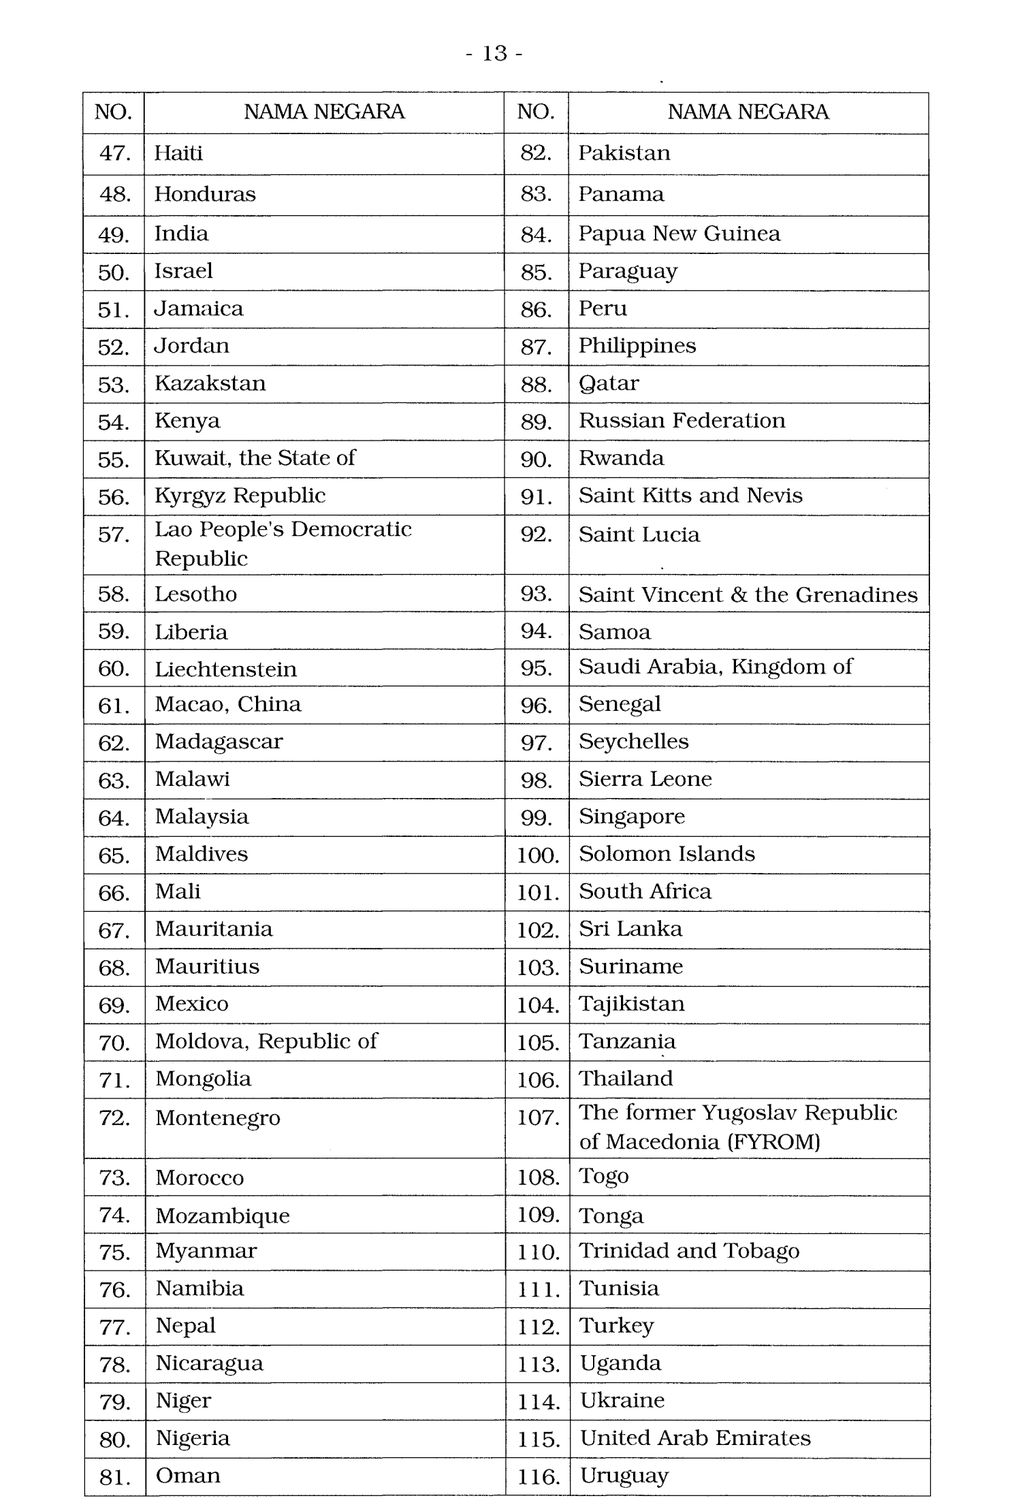 Daftar Negara yang Dikecualikan dari Pengenaan Bea Masuk Tindakan Pengamanan Impor Produk Pakaian dan Aksesoris Pakaian. Hal 13